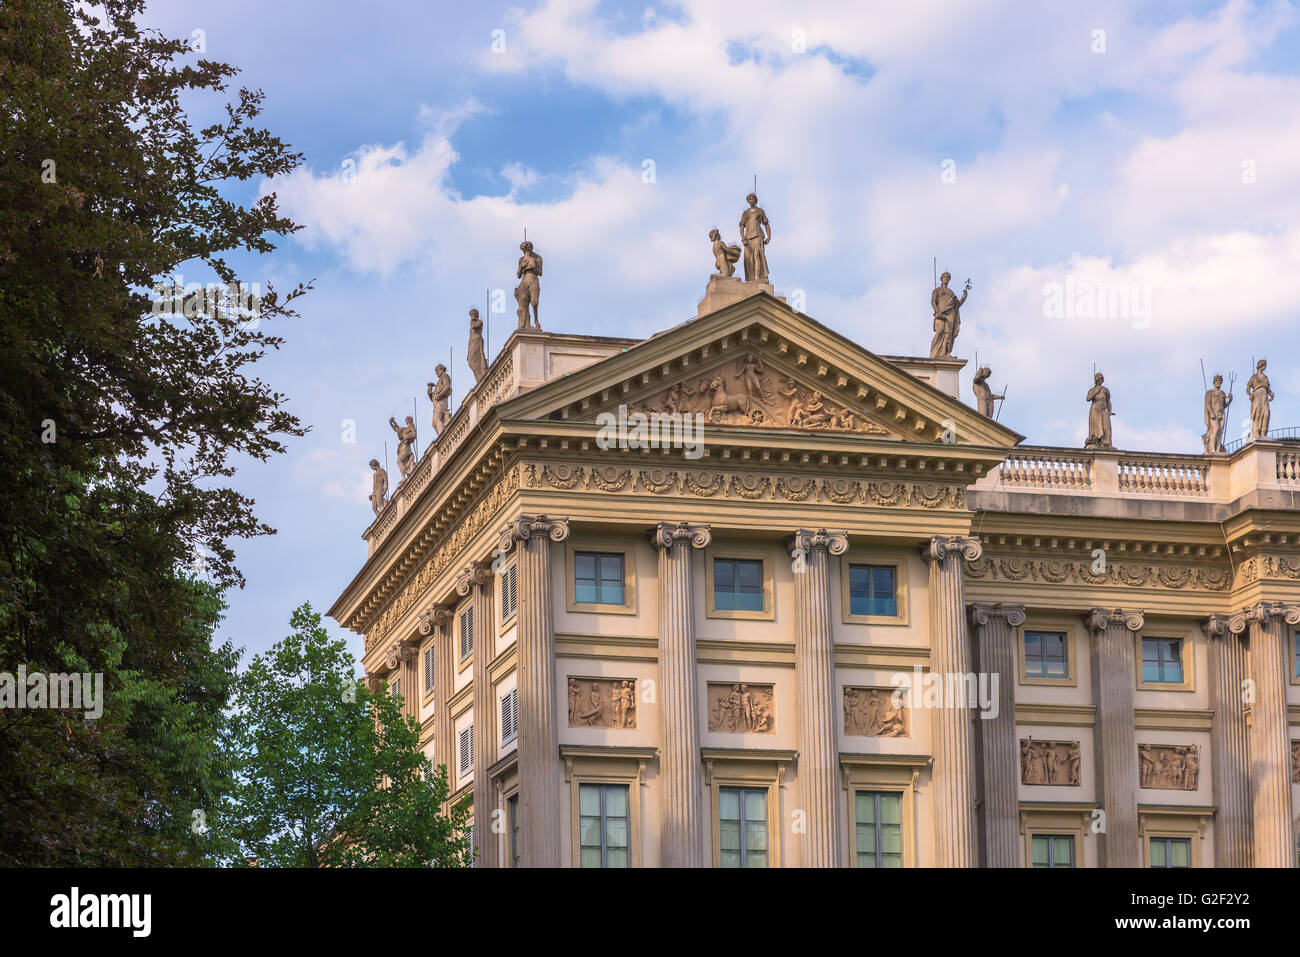 Villa Reale, Milan, Italie ; voir de beaux palais néoclassique. Banque D'Images